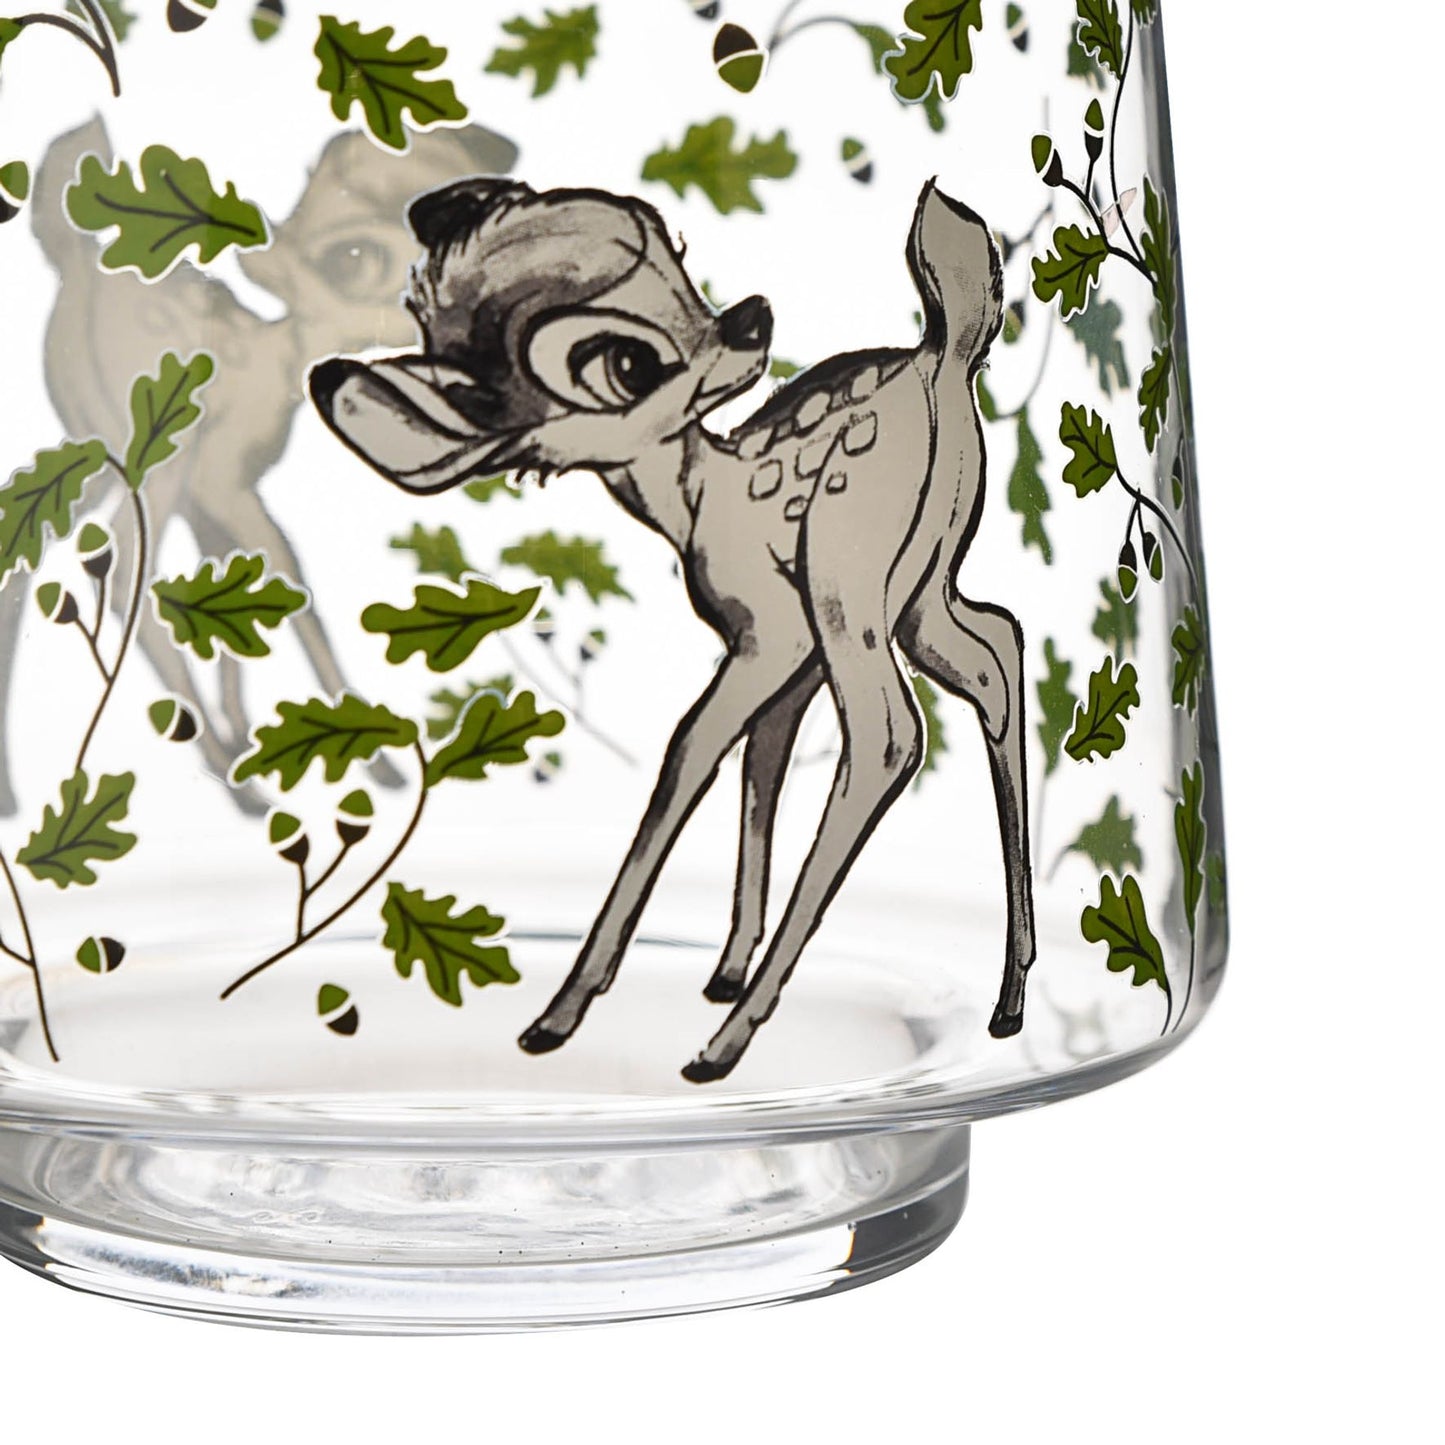 Disney Forest Friends Bambi Vaas - een unieke glazen vaas met een charmant ontwerp van Bambi en zijn vriendjes. Voeg een vleugje betovering toe aan je huis. Verkrijgbaar op www.startedwiththemouse.com.